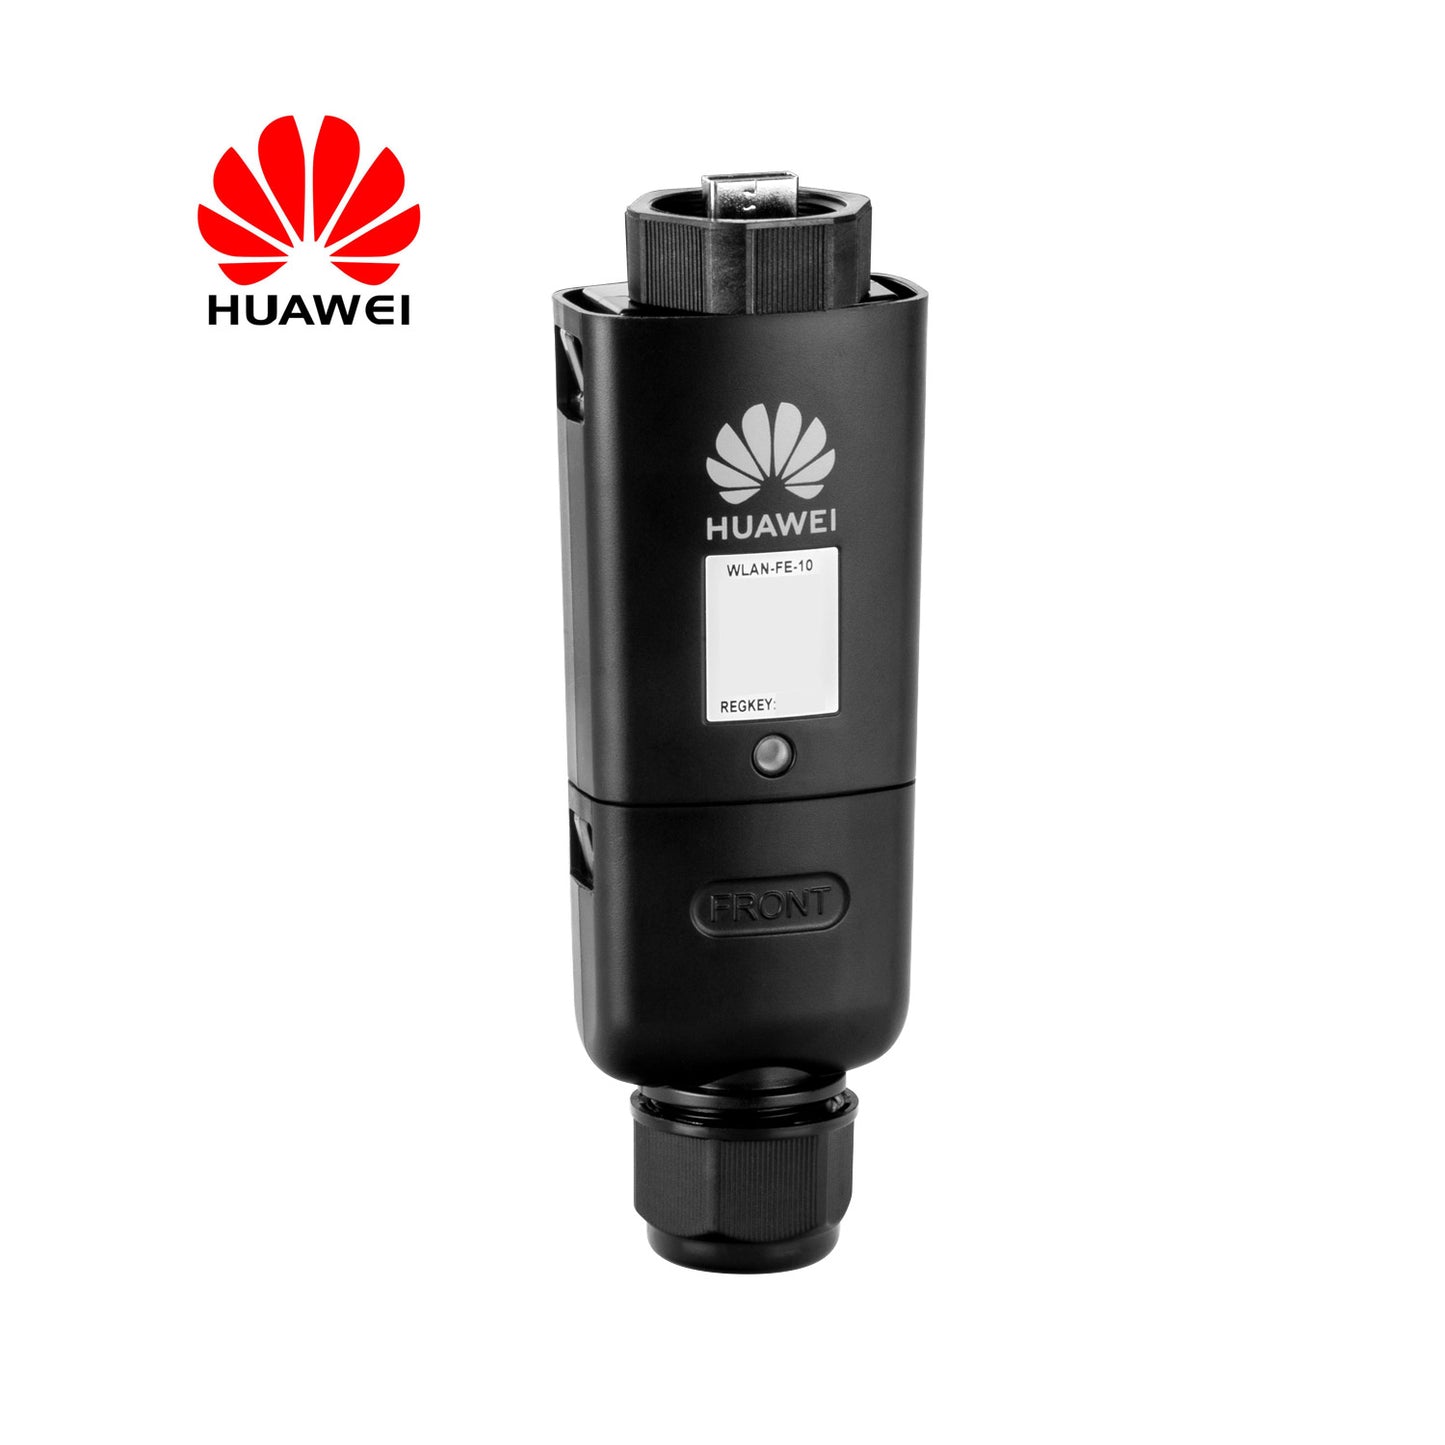 Huawei SDongleA-05wlan-fe